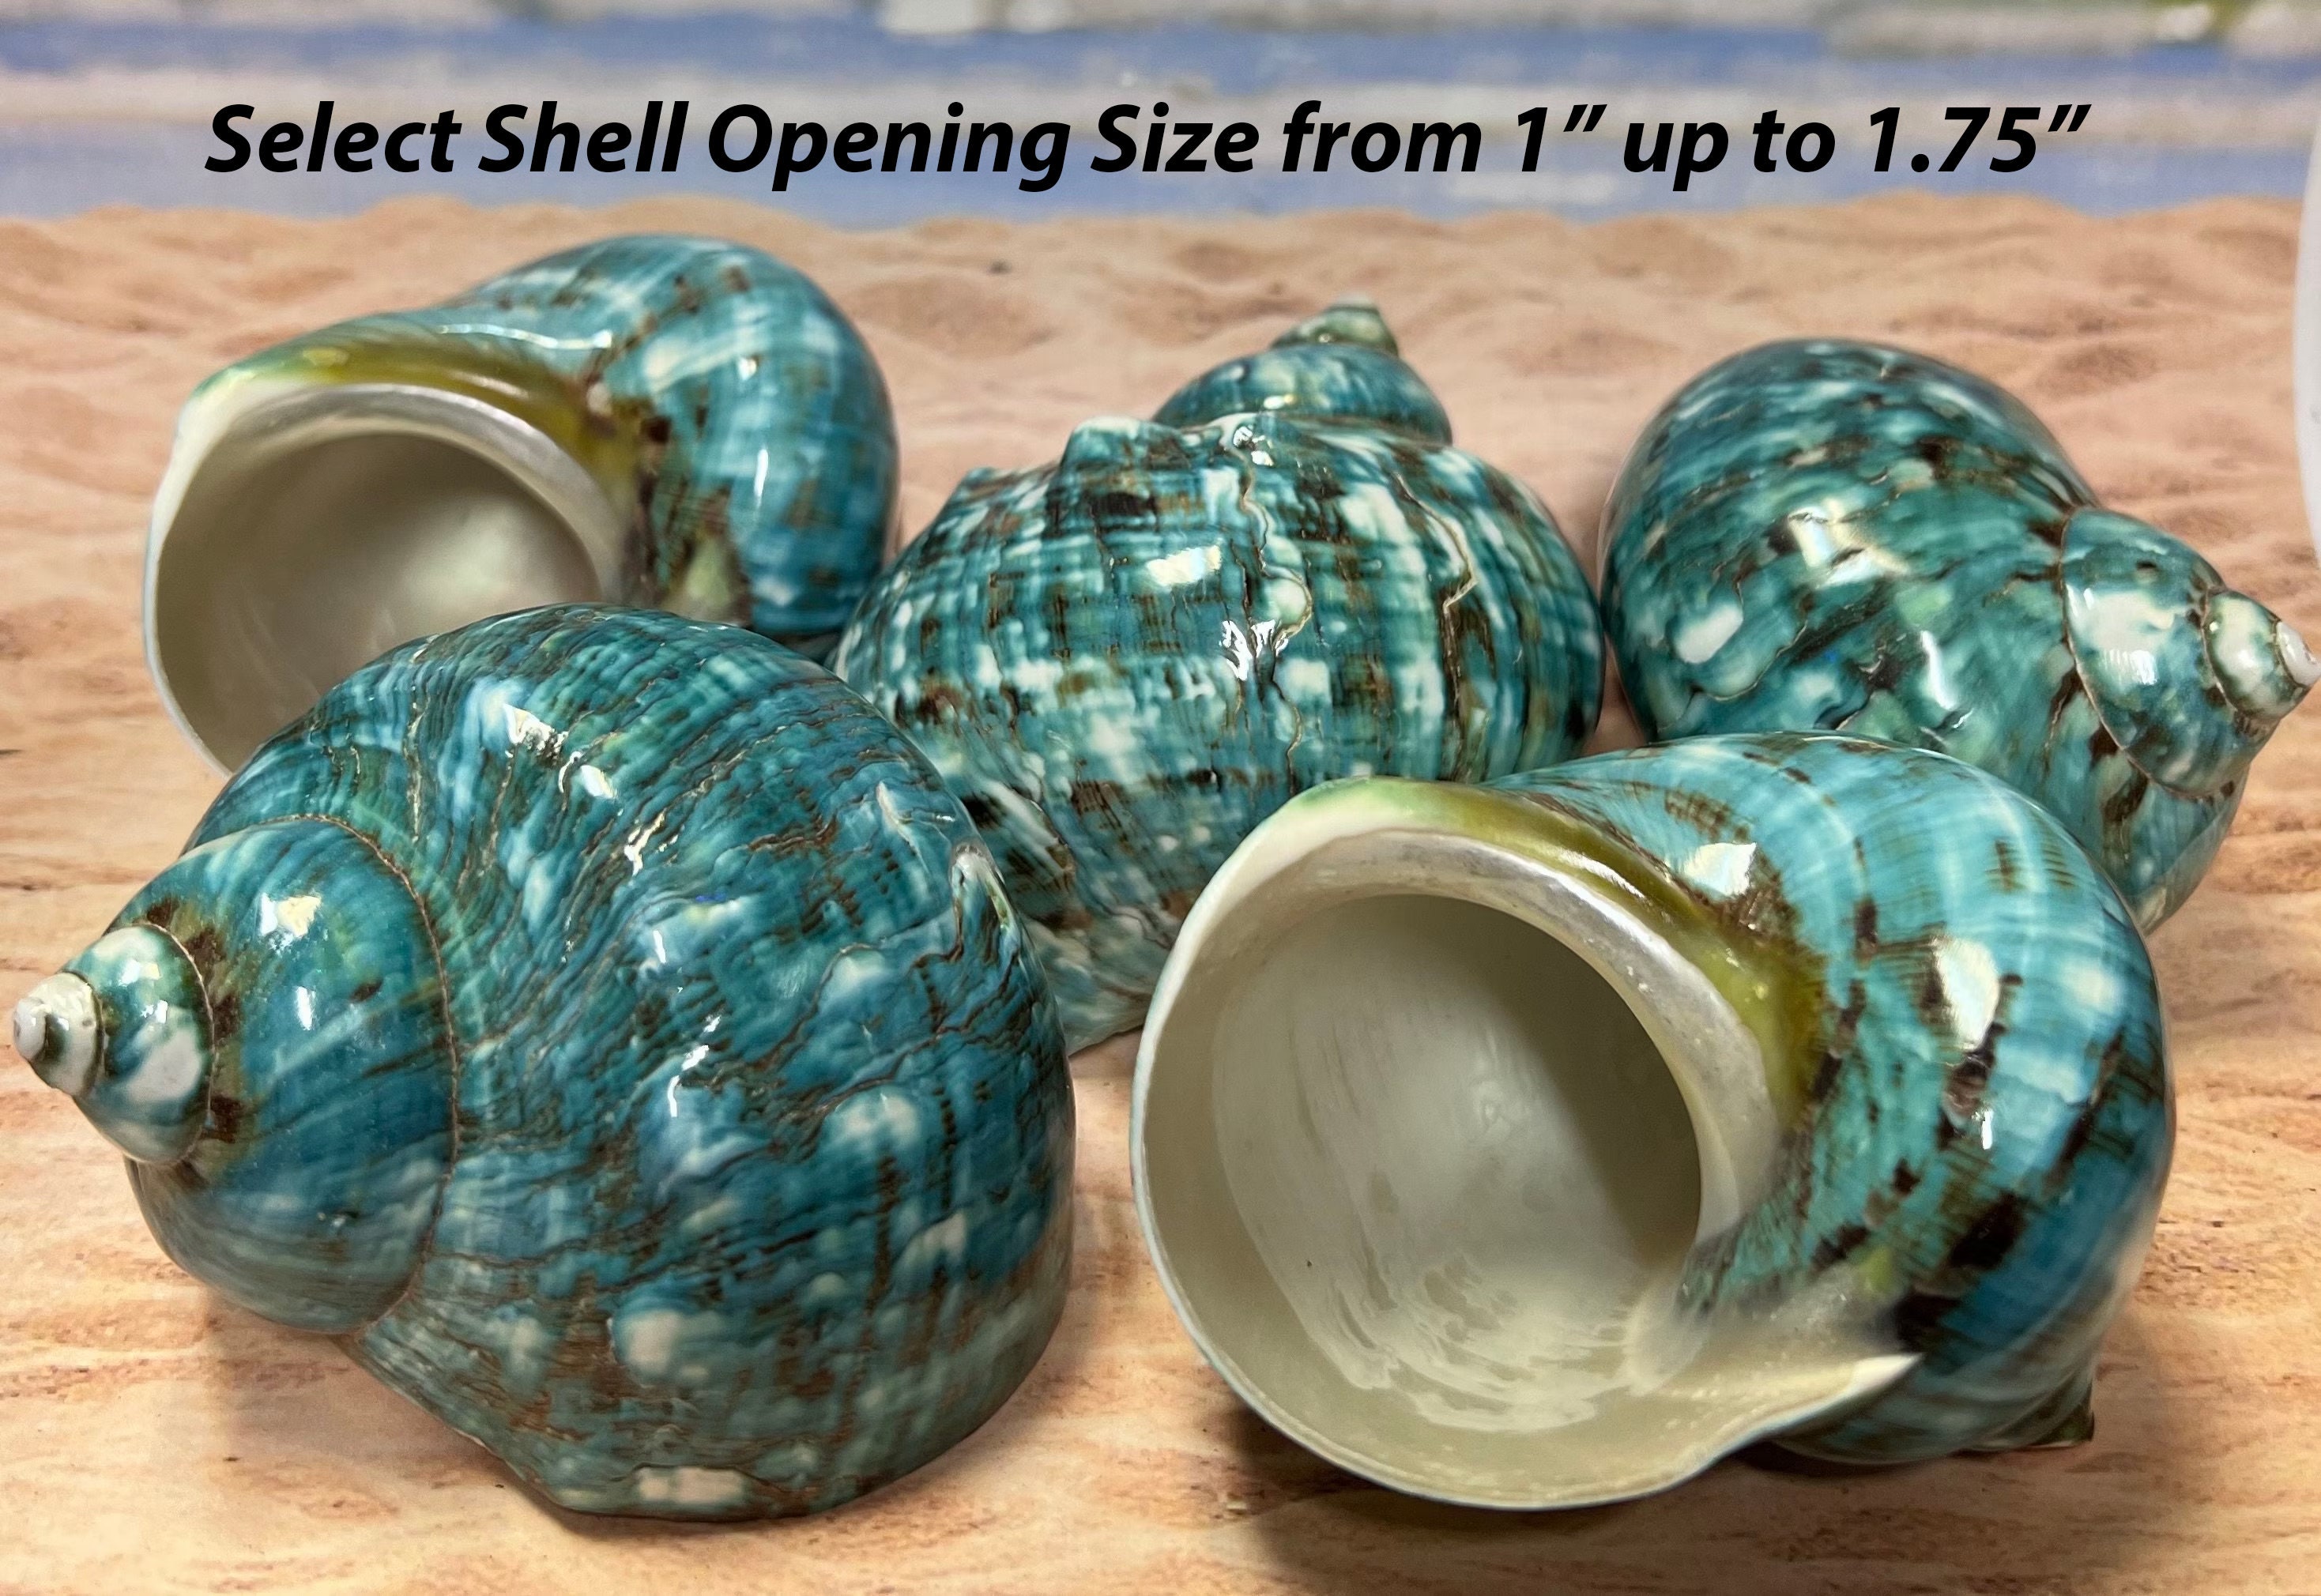 Turbo Stenogyrus Shells-Green Turbo Shells-Shells for  Crafting-Decor-Shells-Sea Shells-Turbo Shells-Wedding-Small Shells-FREE  SHIPPING!